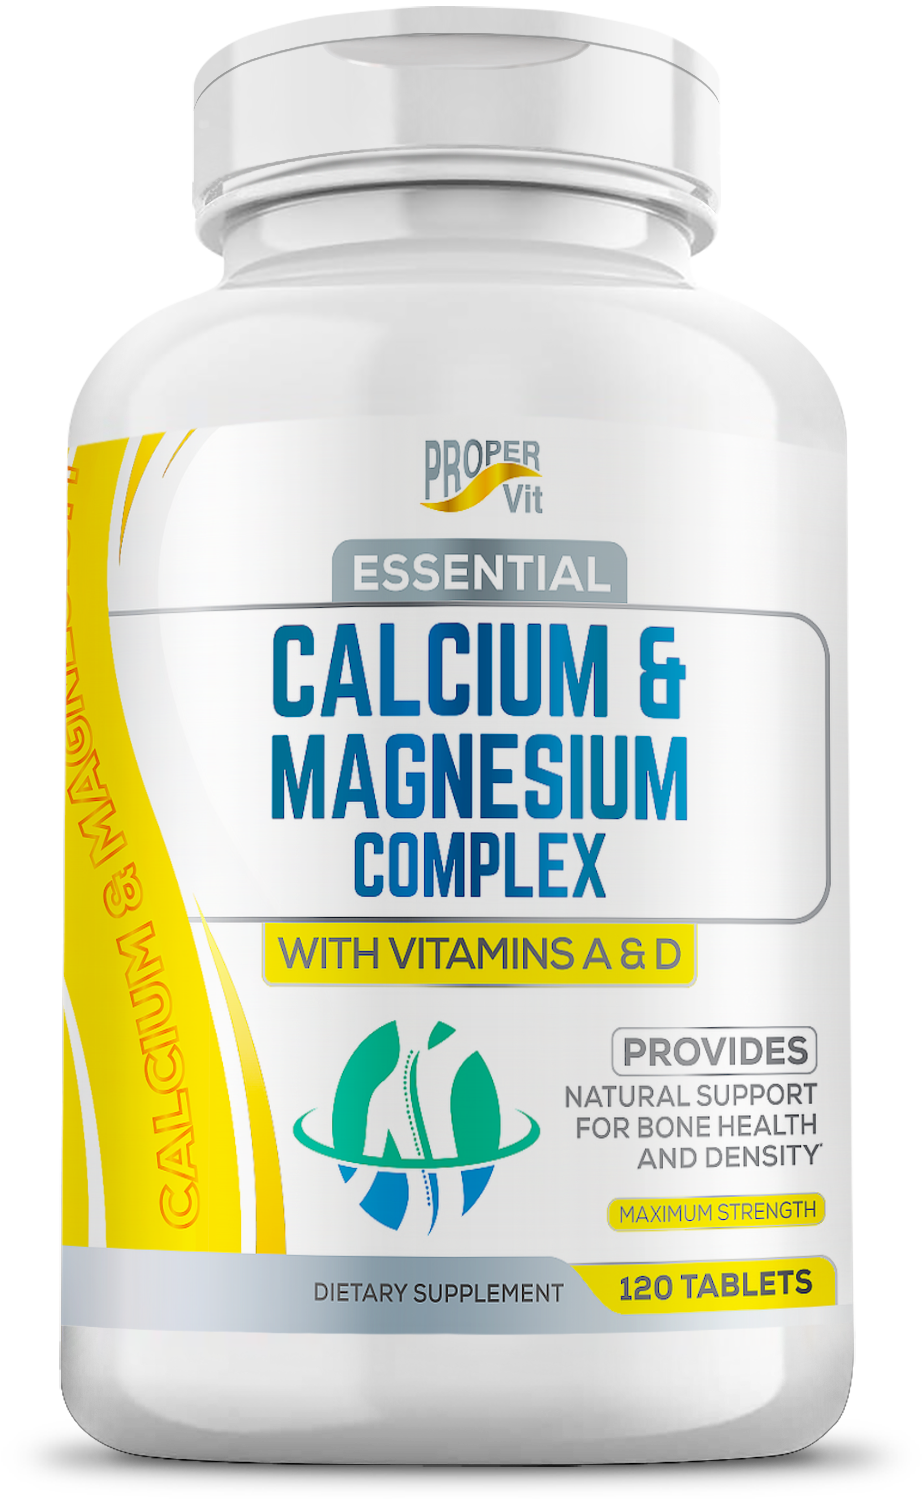 Essential Calcium & Magnesium Complex with vitamins A & D 120 tablet ...